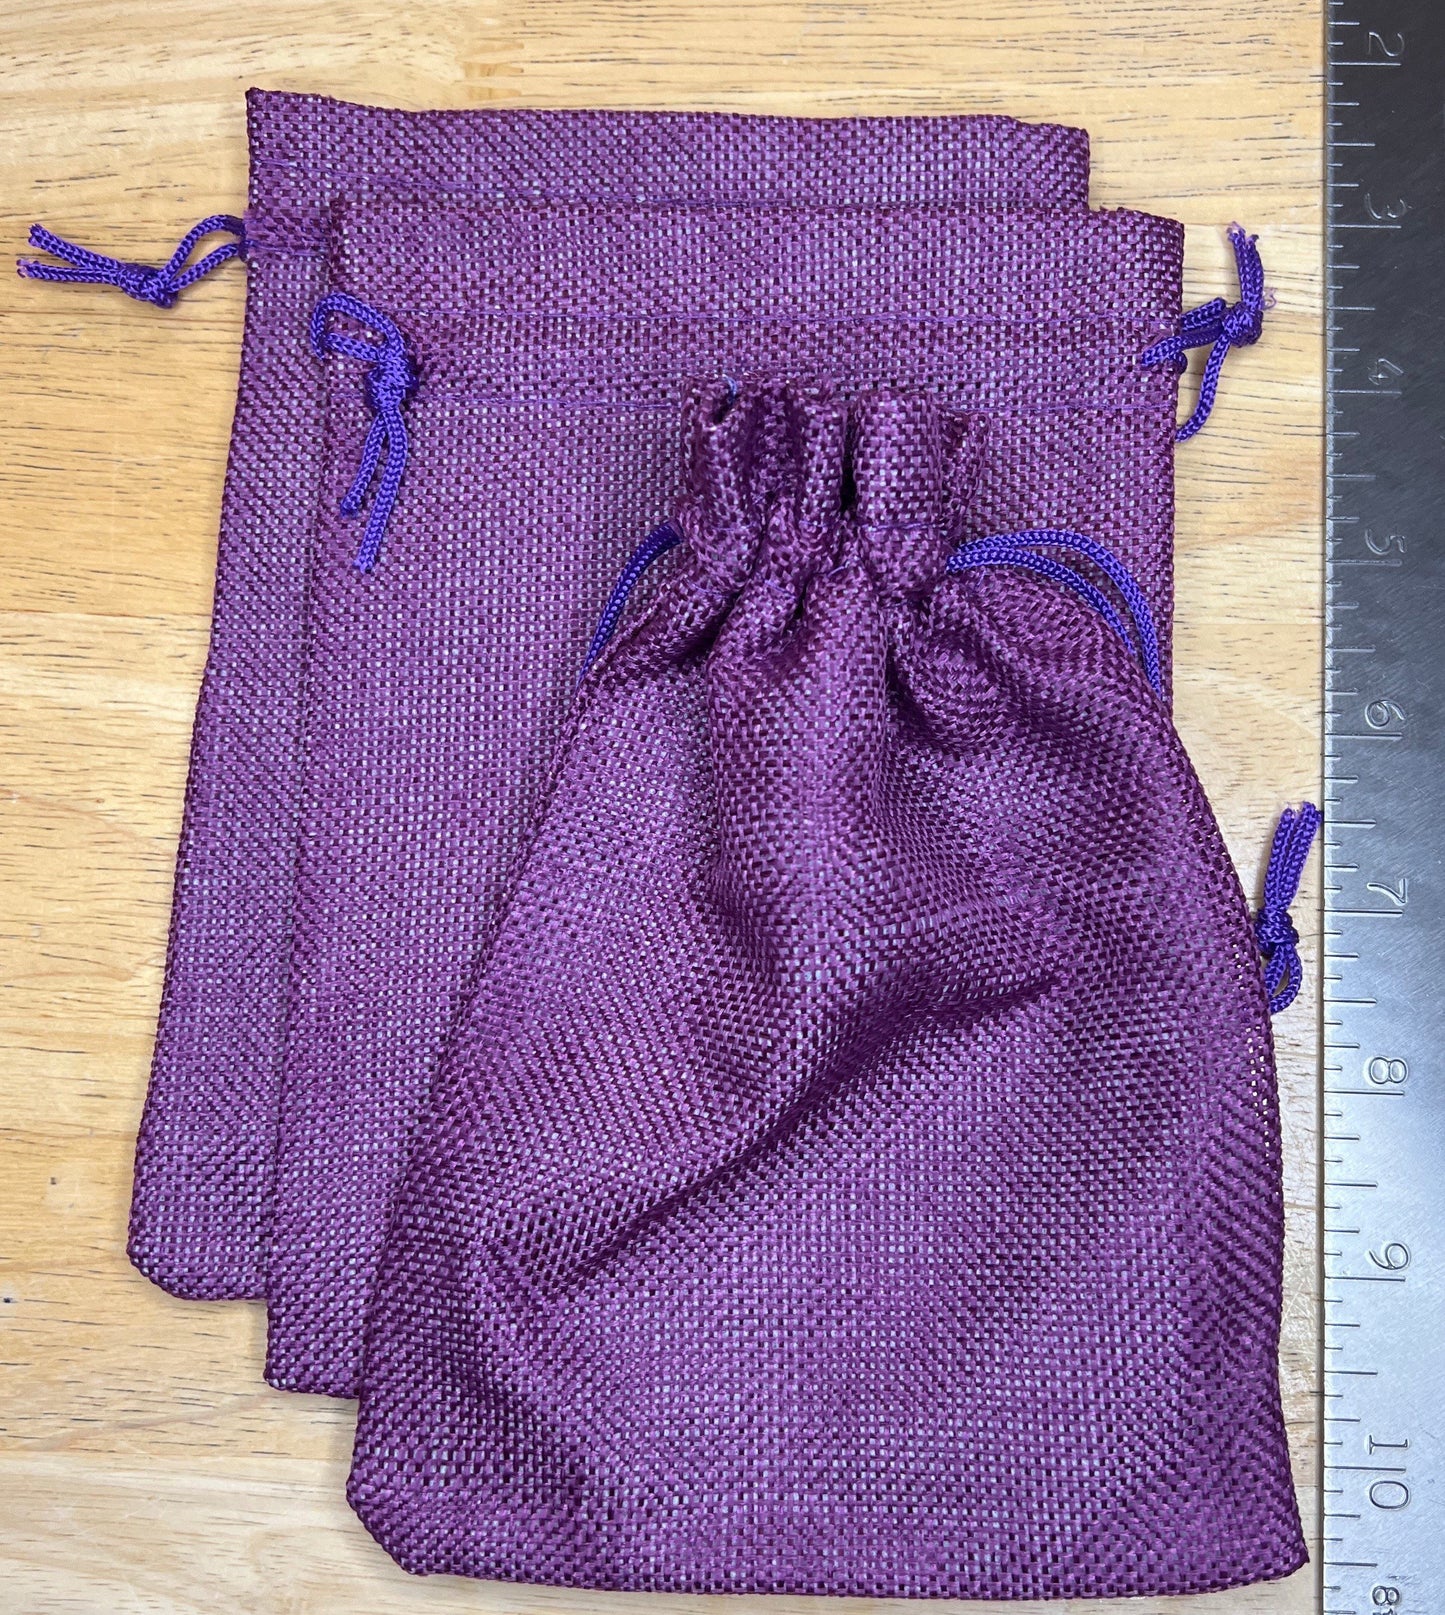 Purple Tweed Bag (Large) BAG-0036 5"x7"